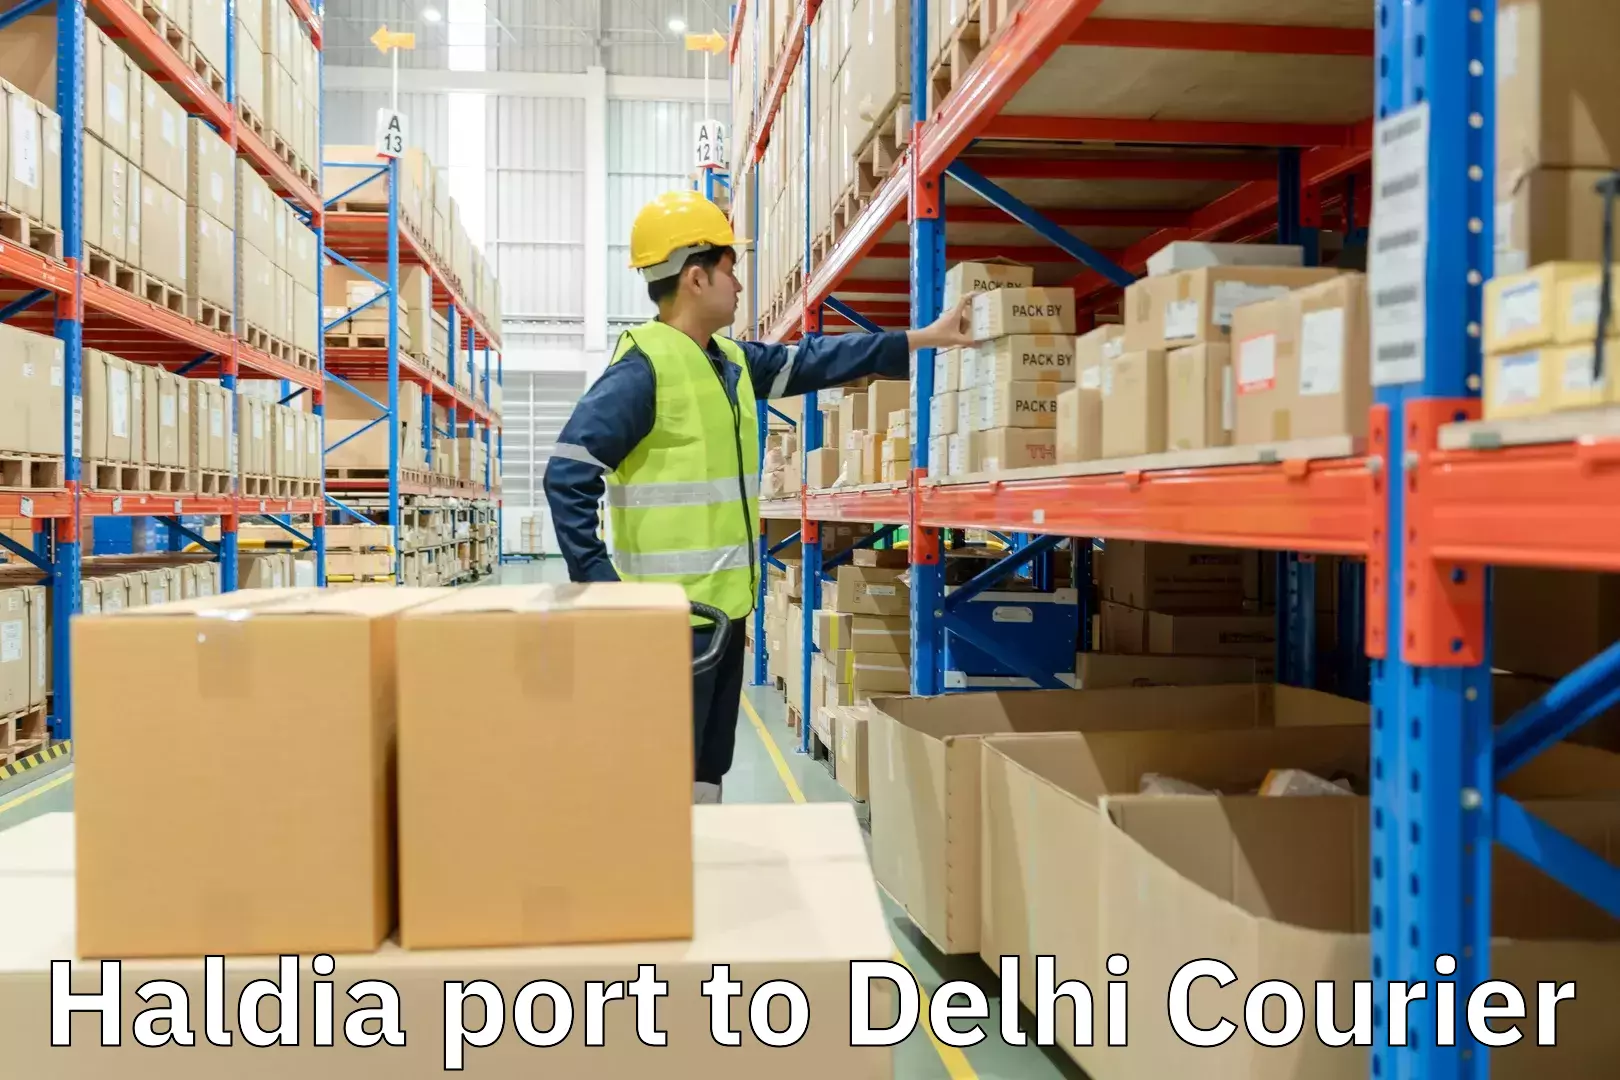 Reliable logistics providers Haldia port to Delhi